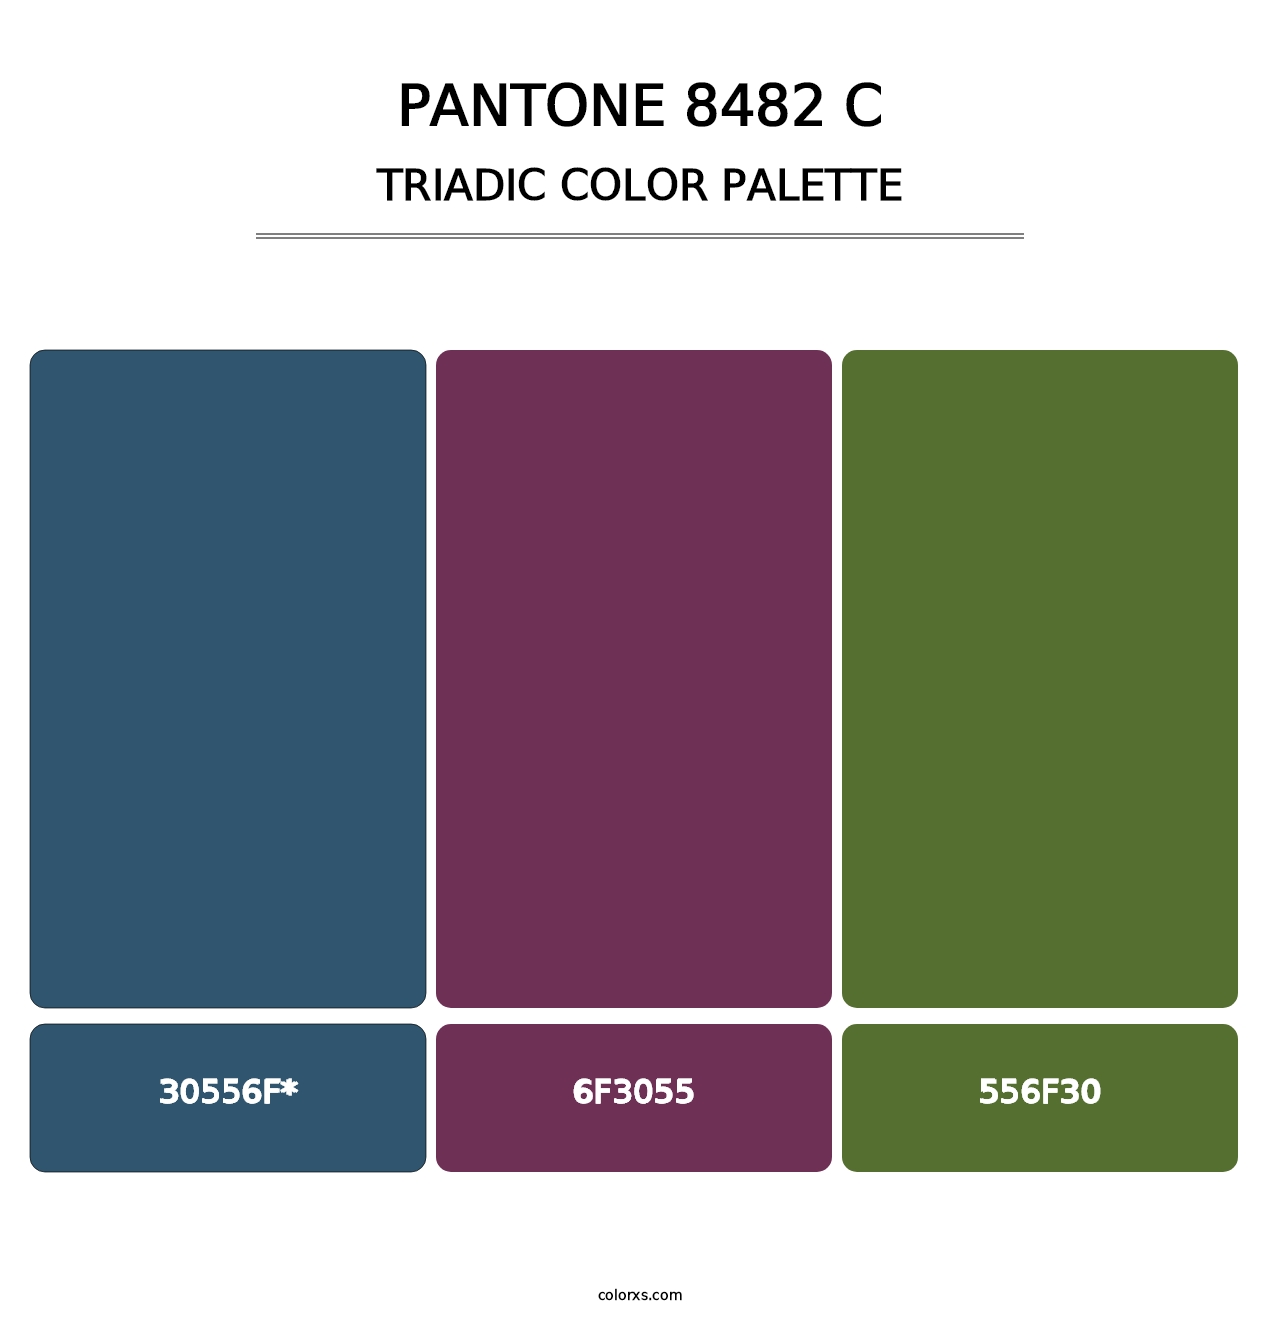 PANTONE 8482 C - Triadic Color Palette